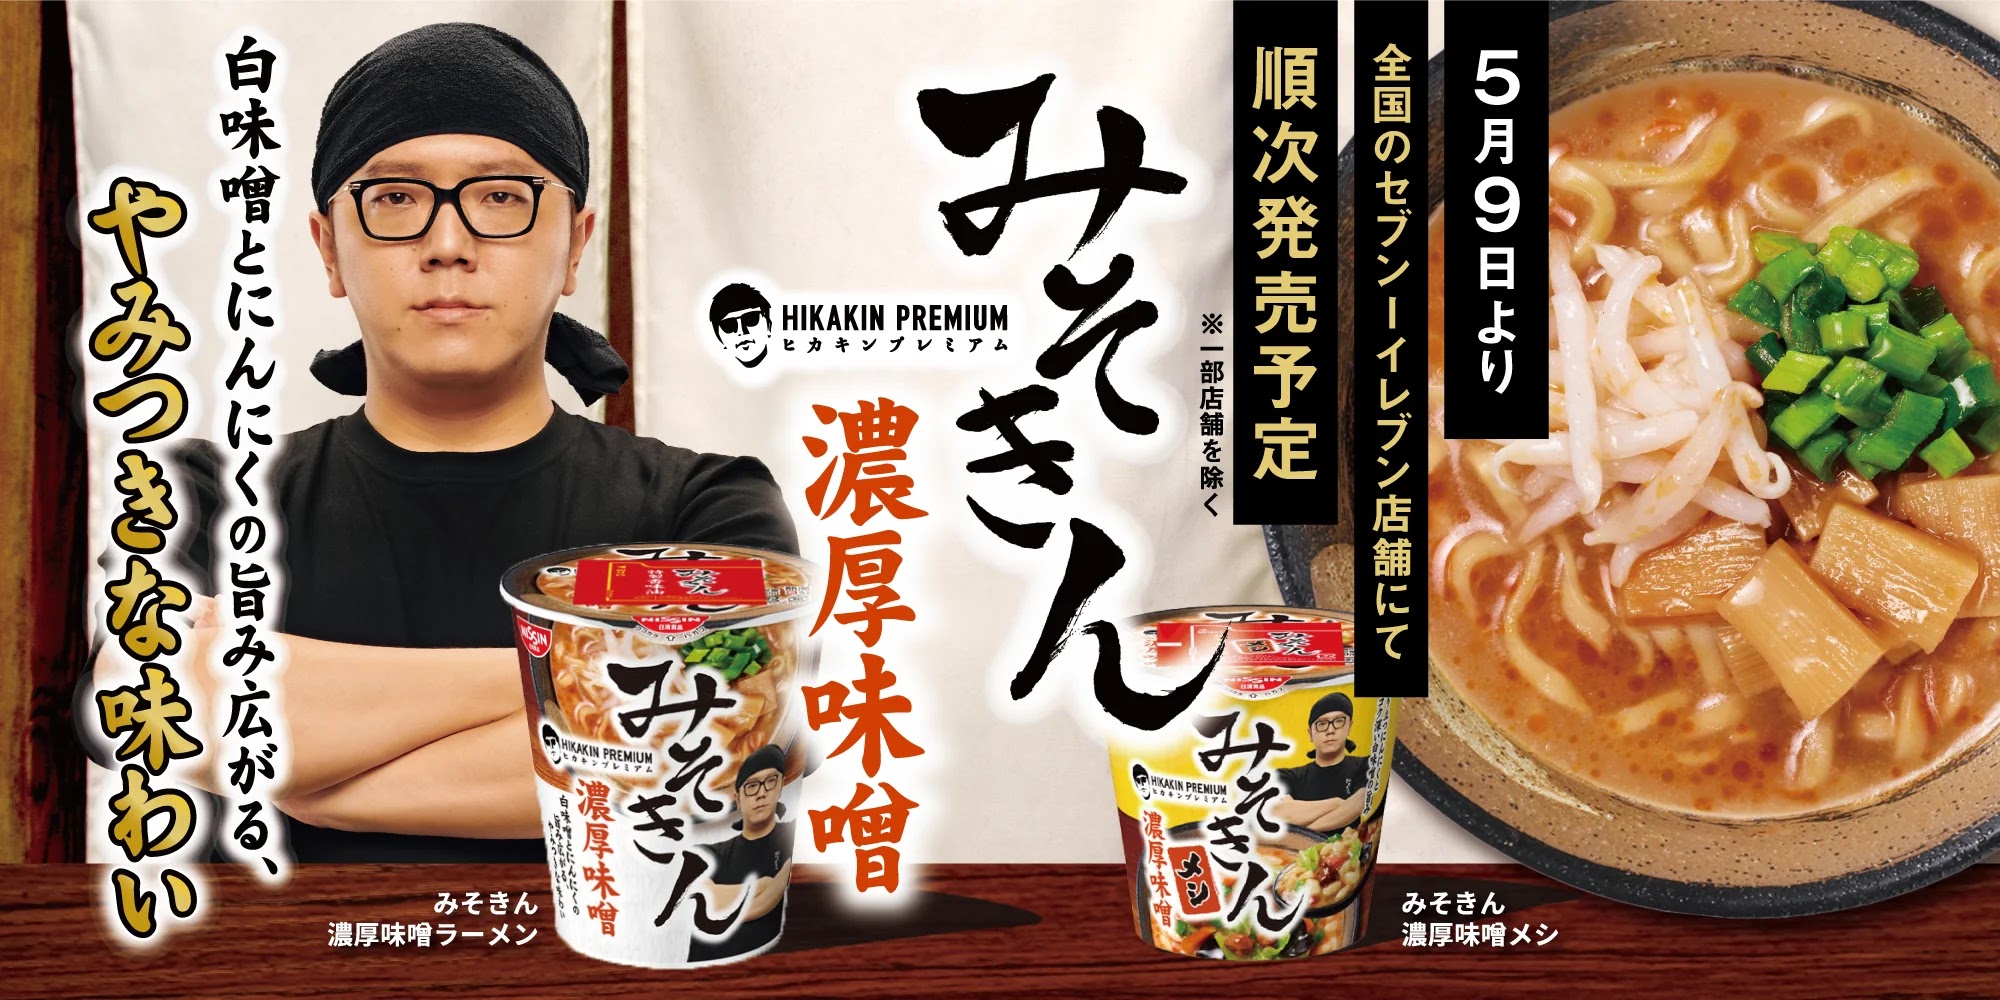 日本千萬 Youtuber HIKAKIN 推出自己的杯麵品牌「ヒカキンのカップ麺」｜濃厚味噌泡麵／泡飯